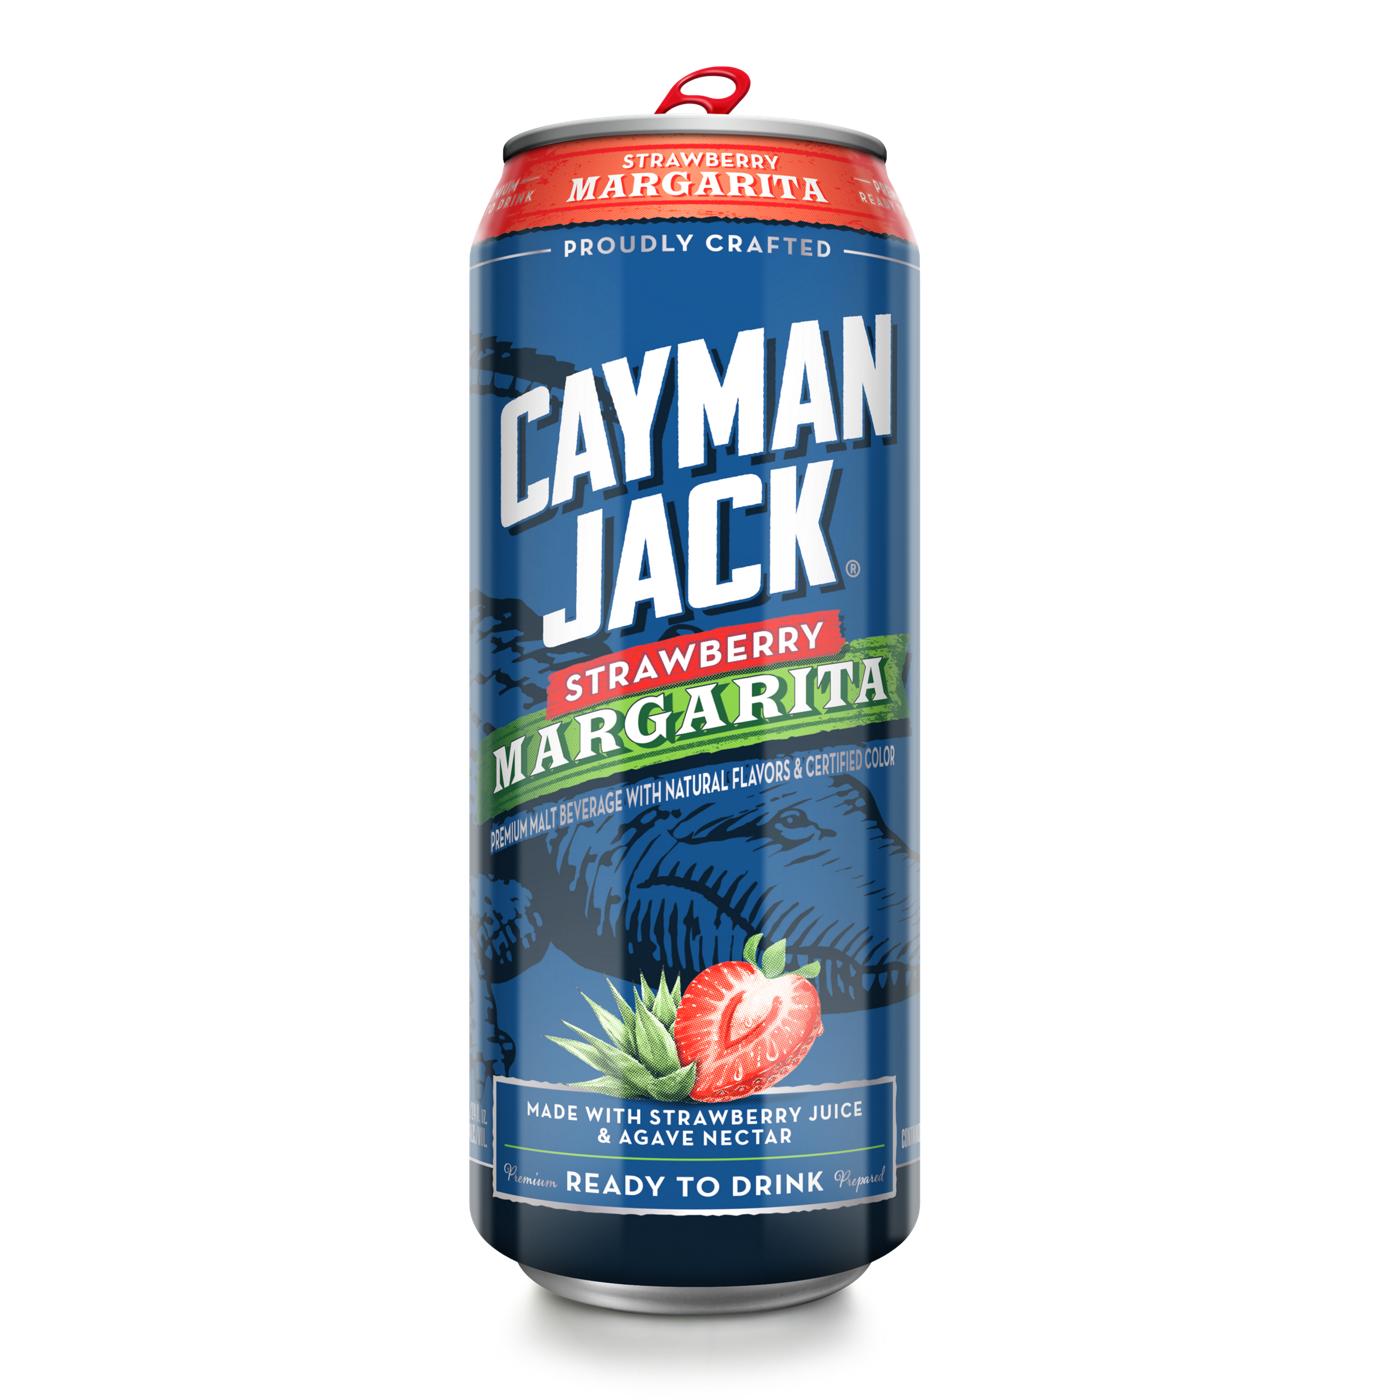 Cayman Jack Strawberry Margarita; image 1 of 2